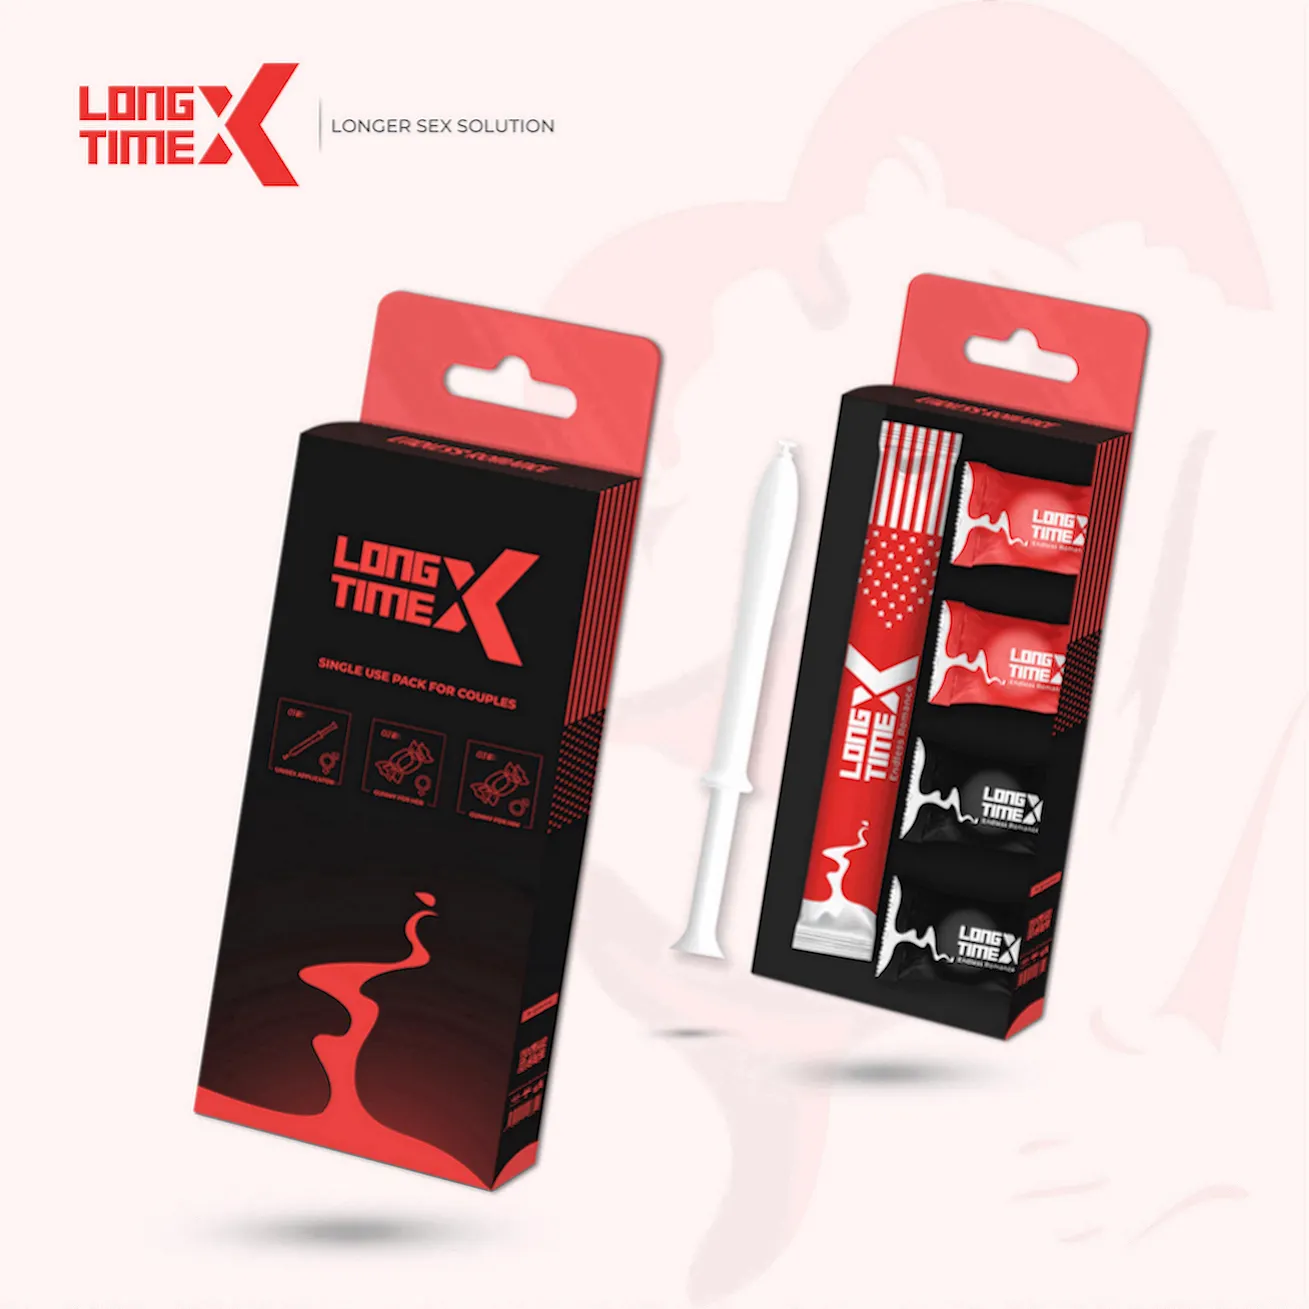 LongtimeX 1 pacote de amor gomoso e gel desempenho brinquedos sexuais para homens e mulheres best-seller gummies masculinas suplemento realce sexe